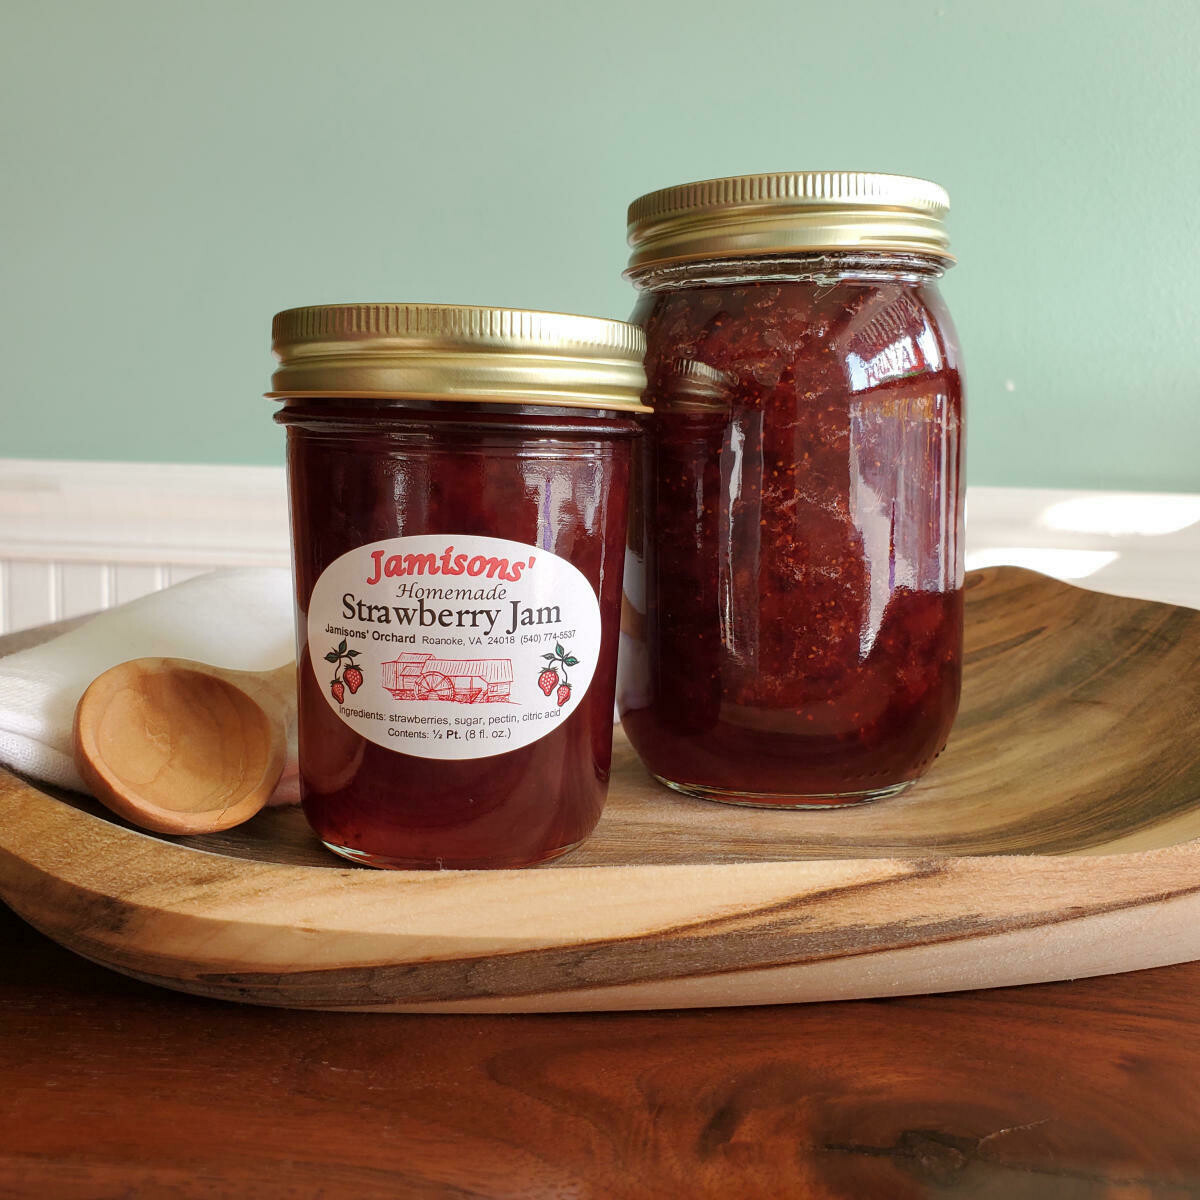 Jamisons' Homemade Strawberry Jam